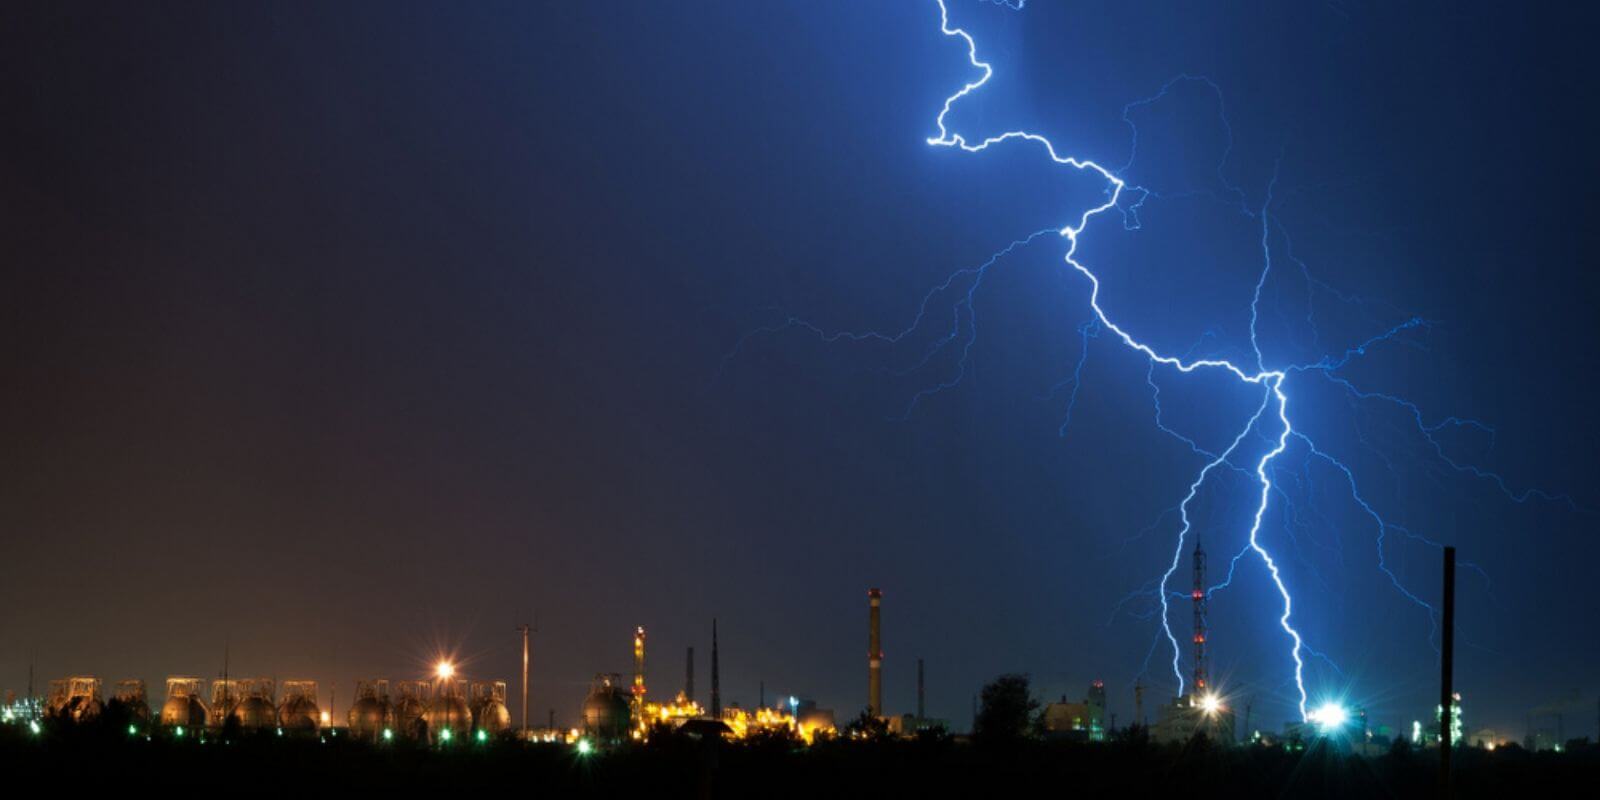 Etude : le Lightning Network est-il devenu trop centralisé ?